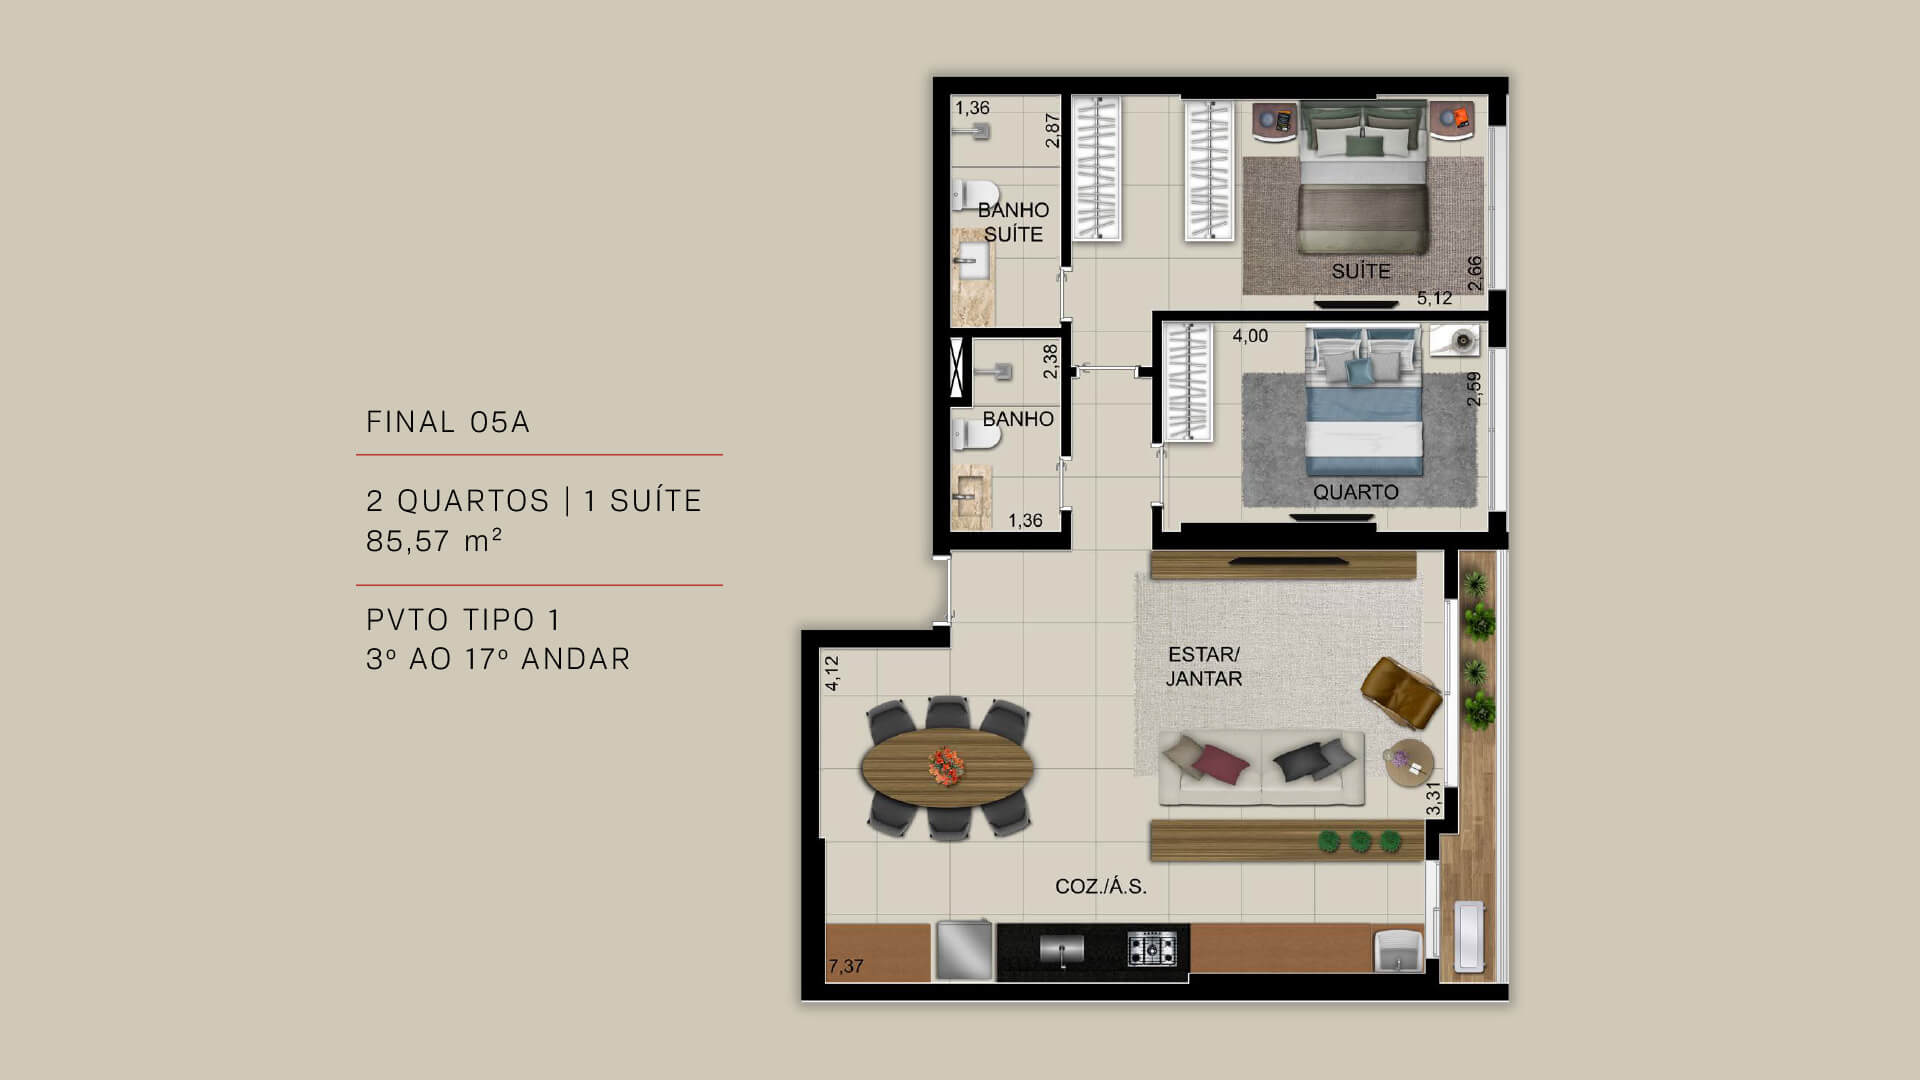 FINAL 05A - 2 QUARTOS | 1 SUÍTE 85,57 m²